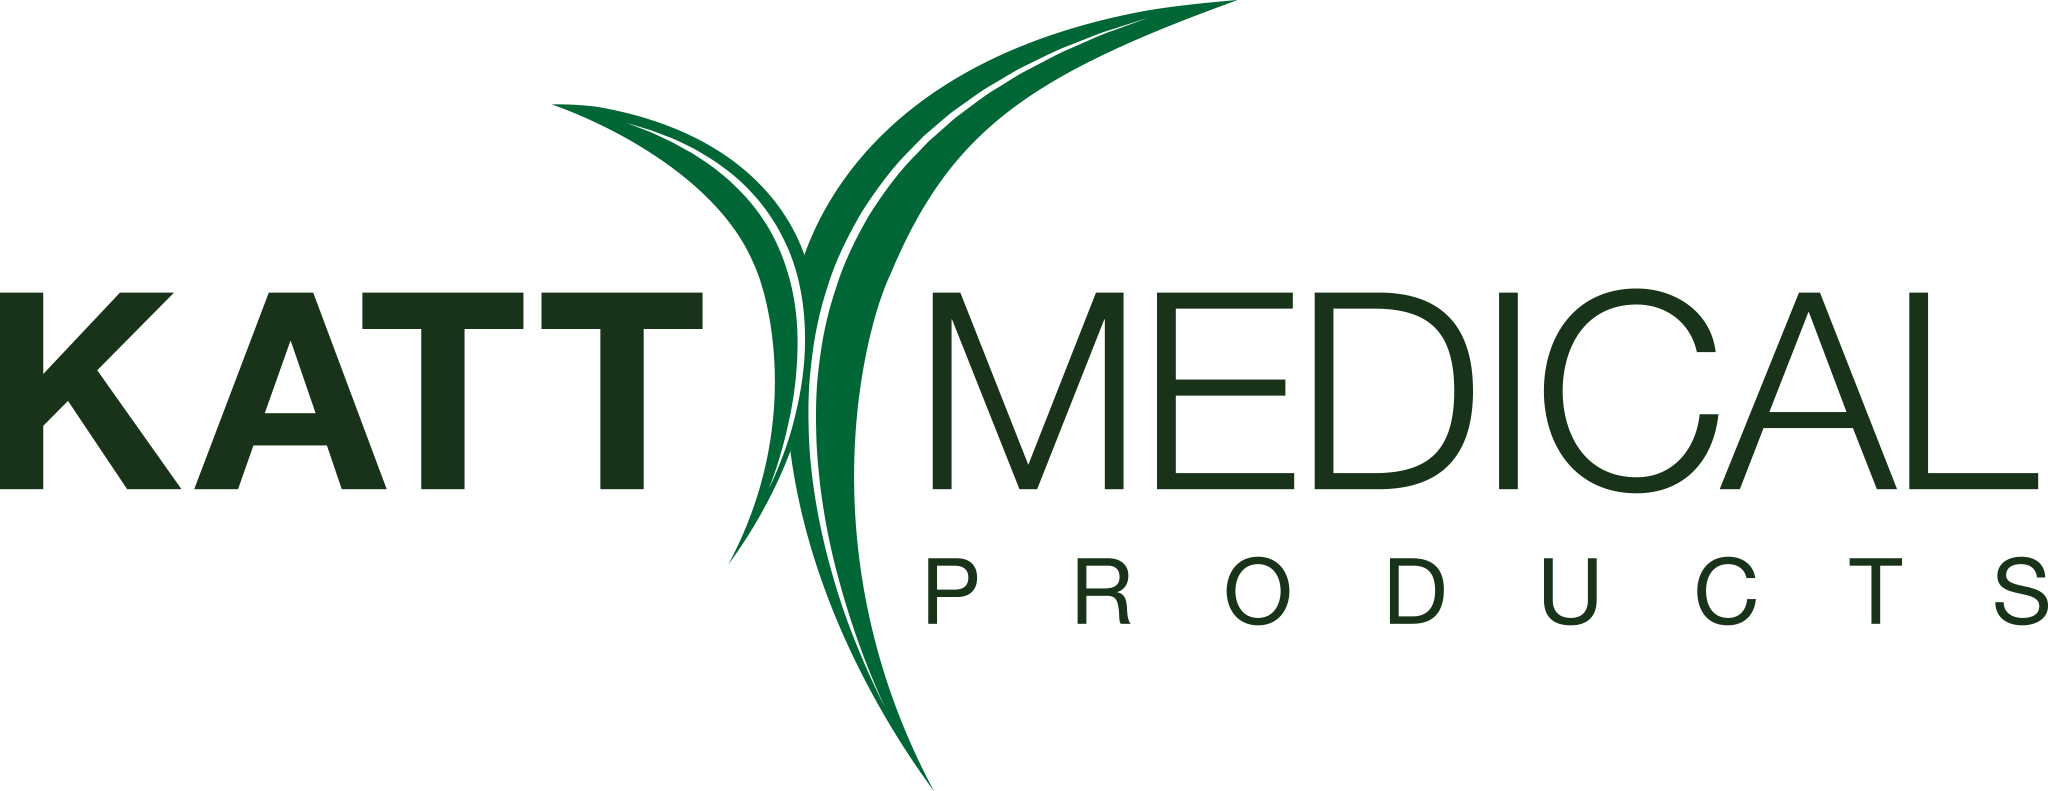 Katt Medical Products